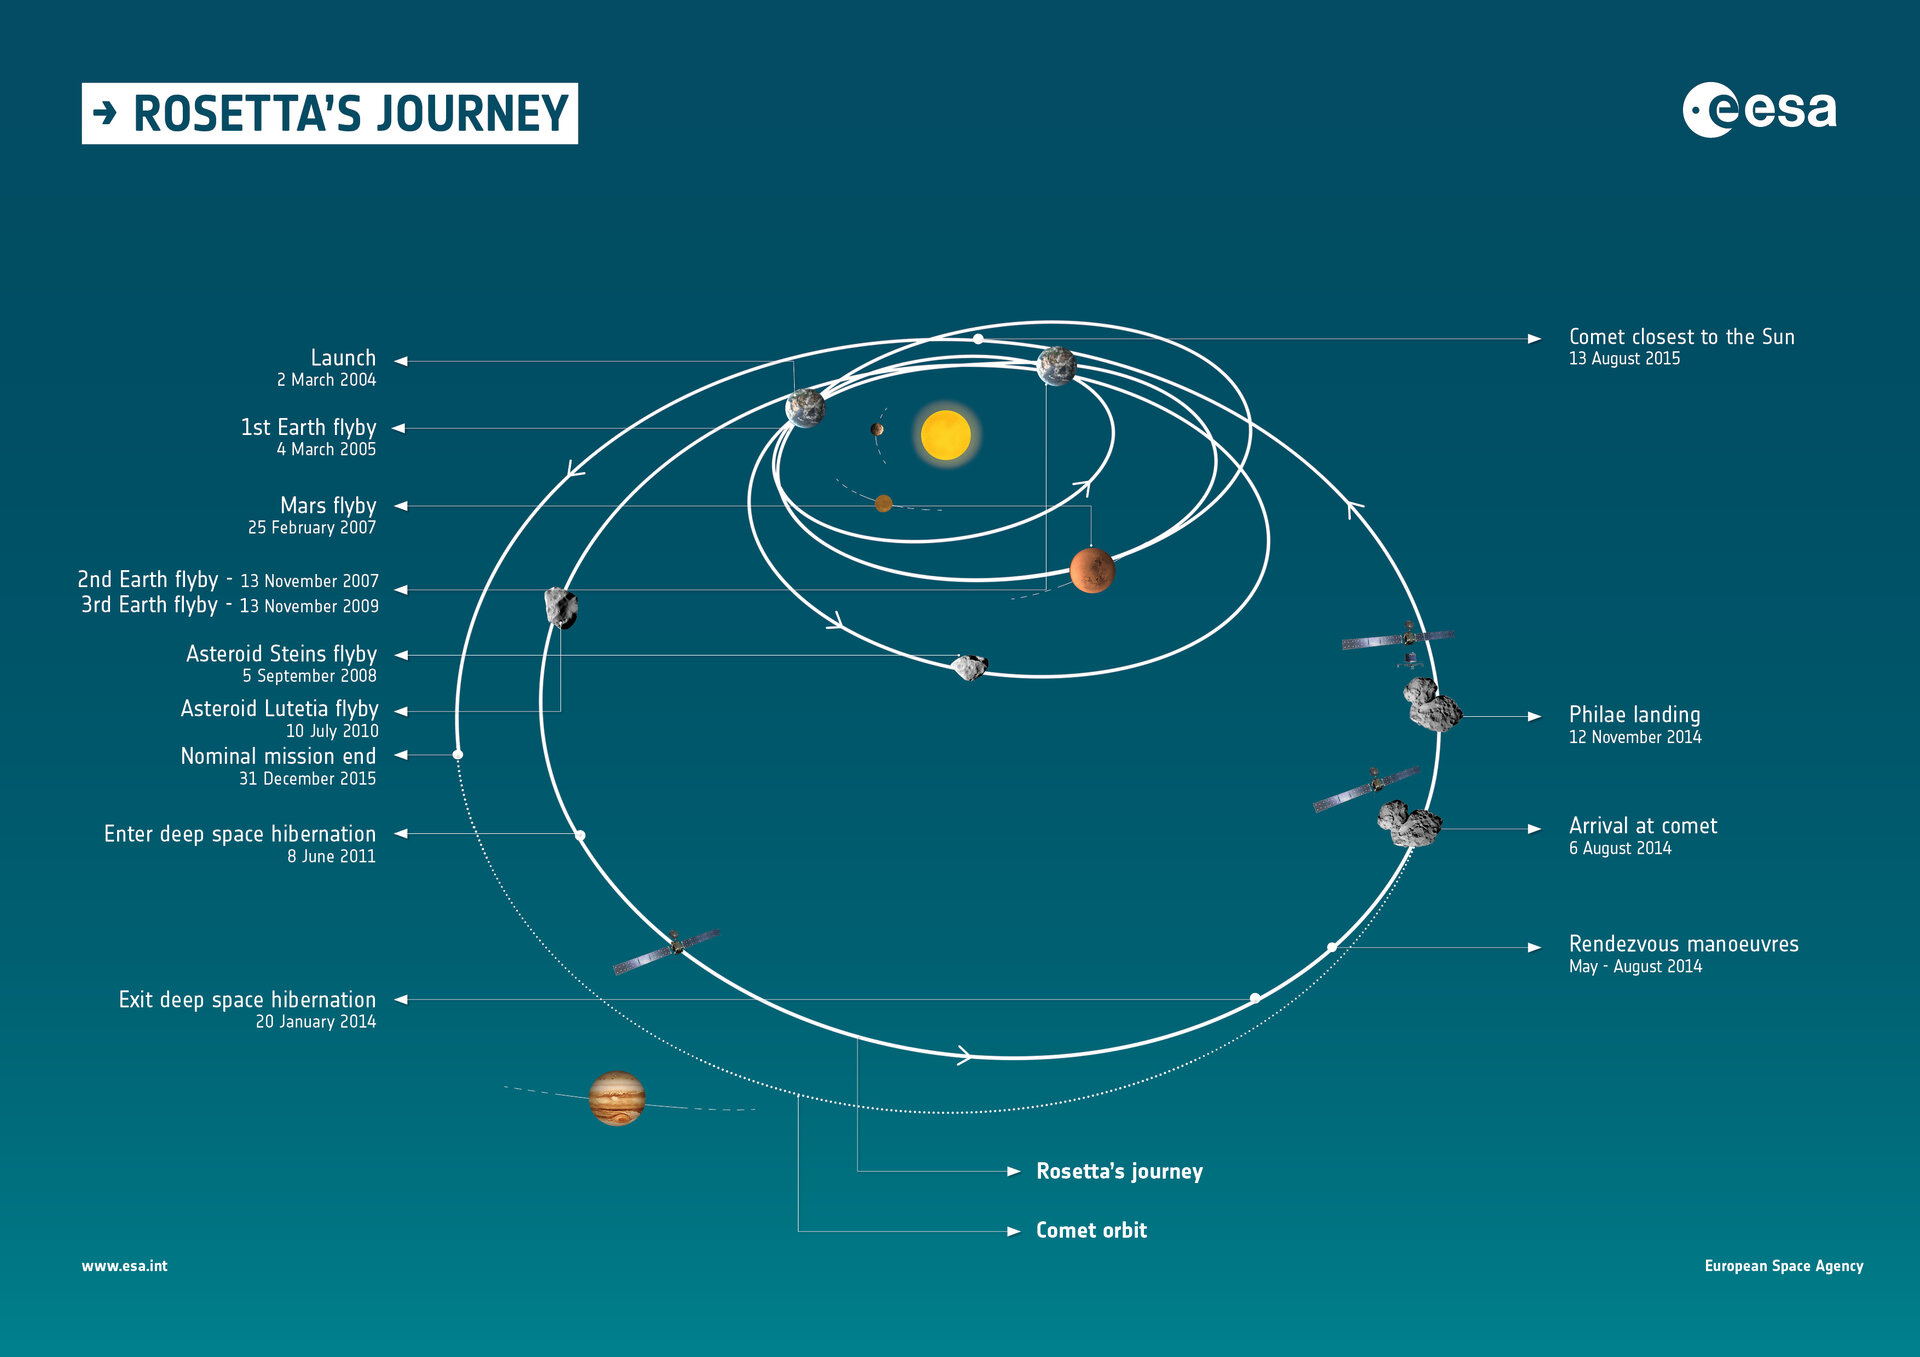 Rosetta’s journey